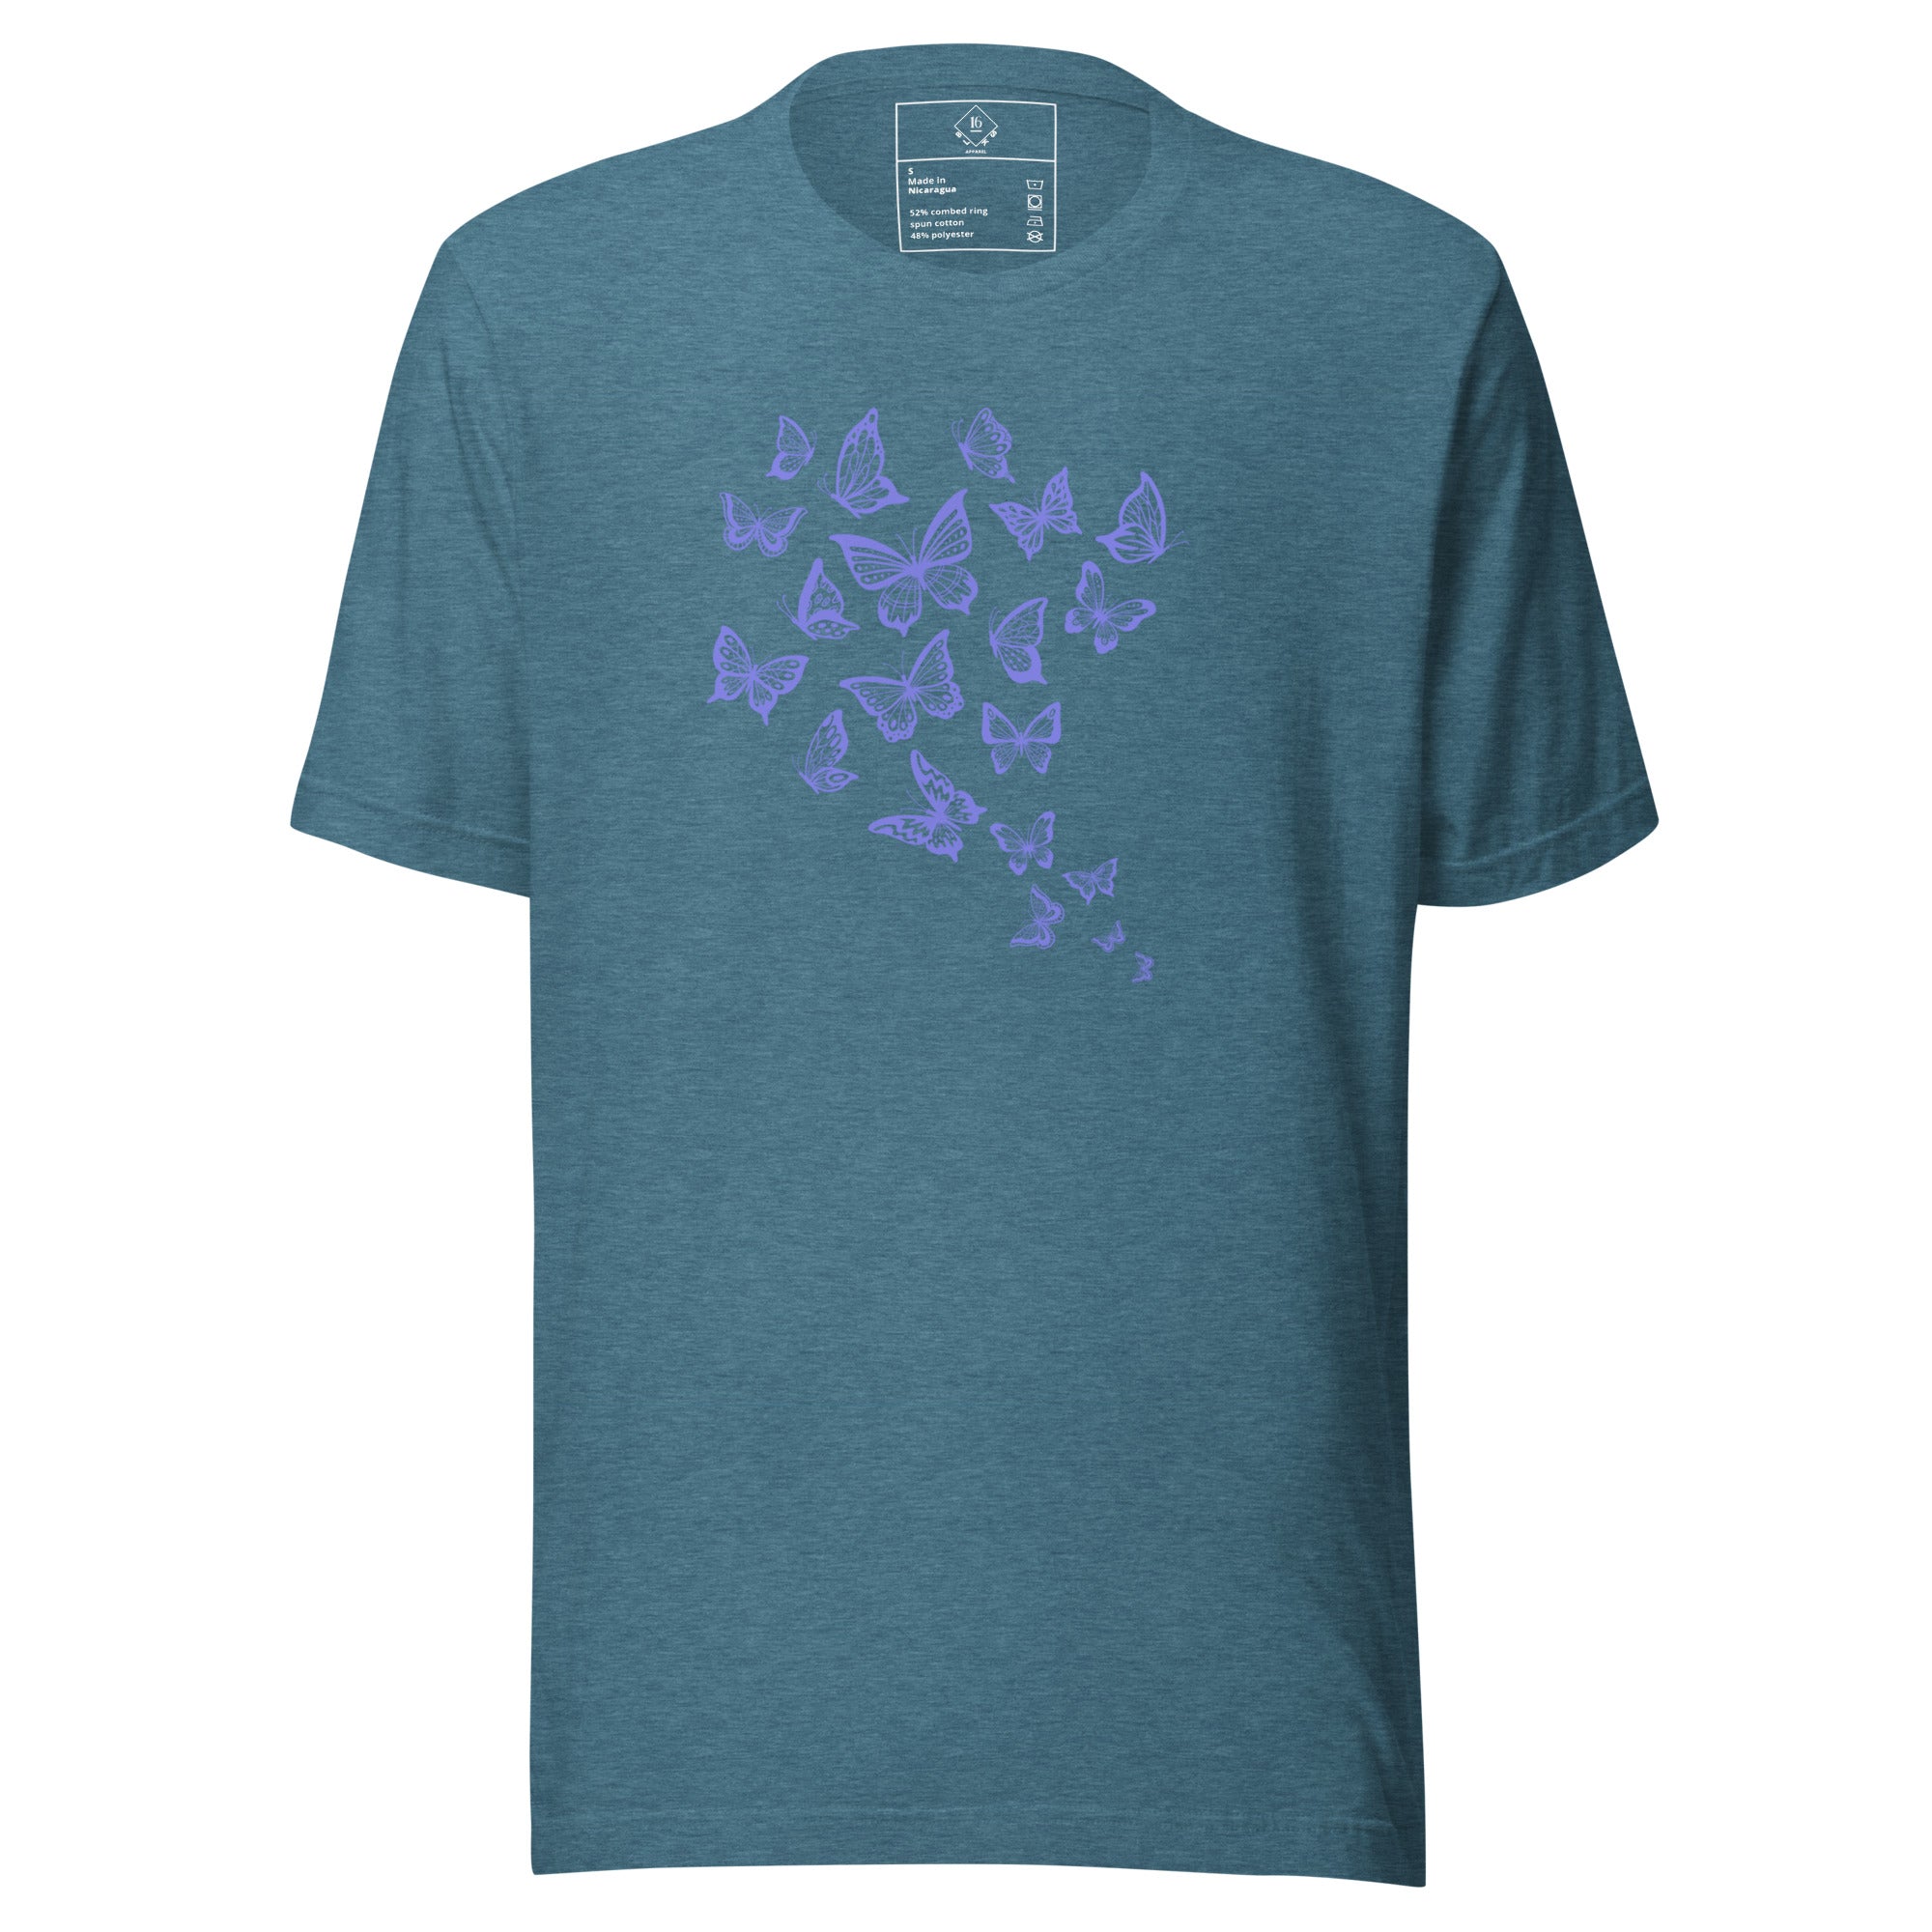 enchanting butterflies women t-shirt color heather deep teal